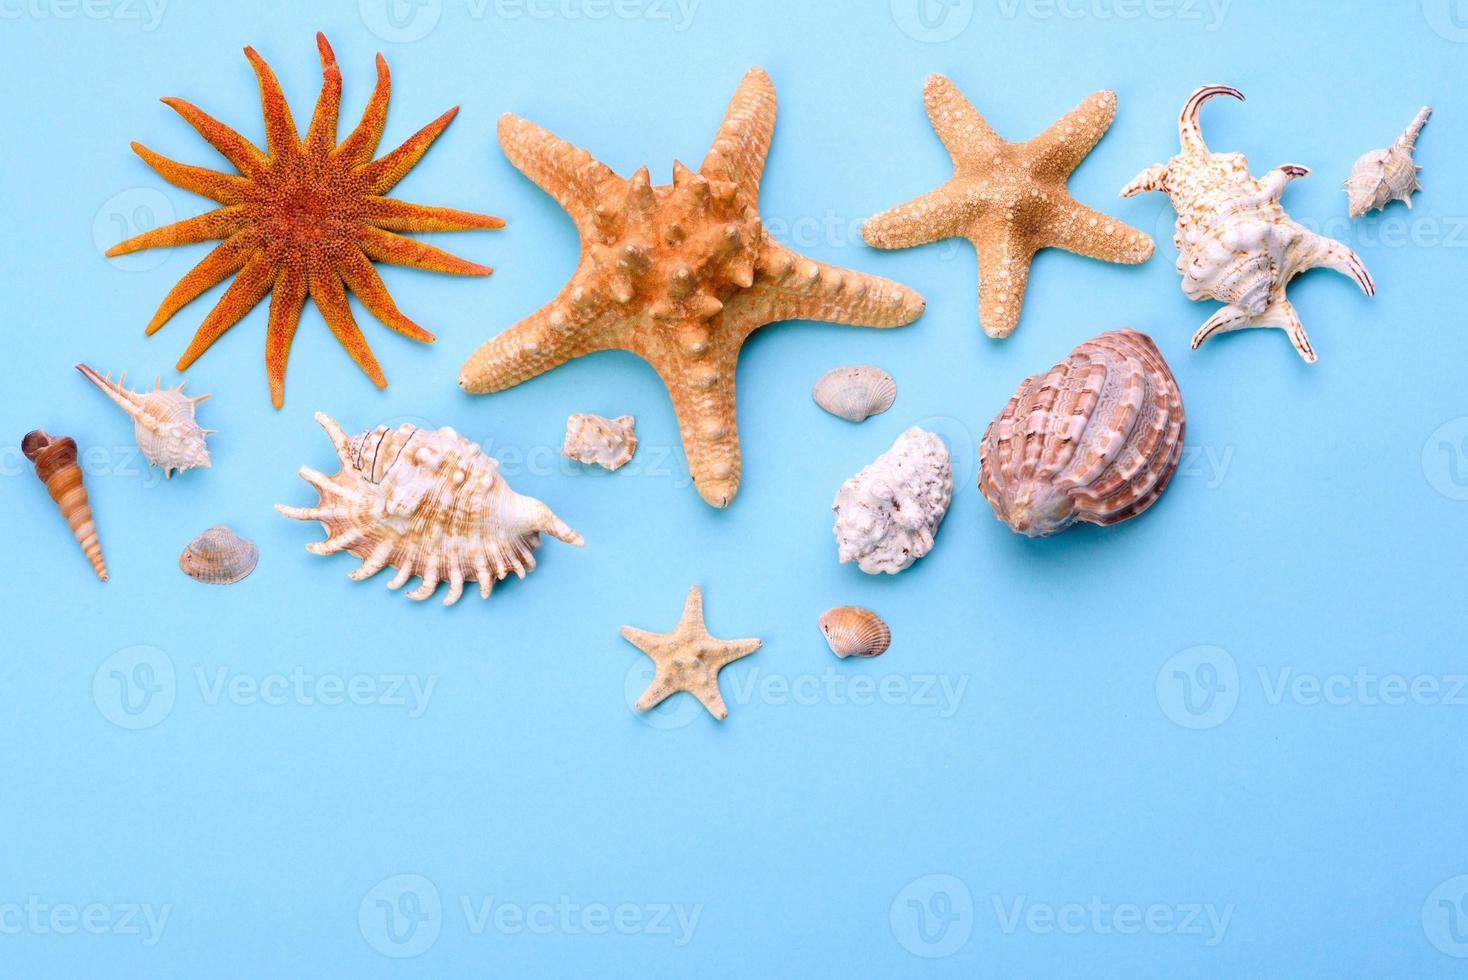 óculos e chapéu com conchas e estrelas do mar em um fundo colorido foto